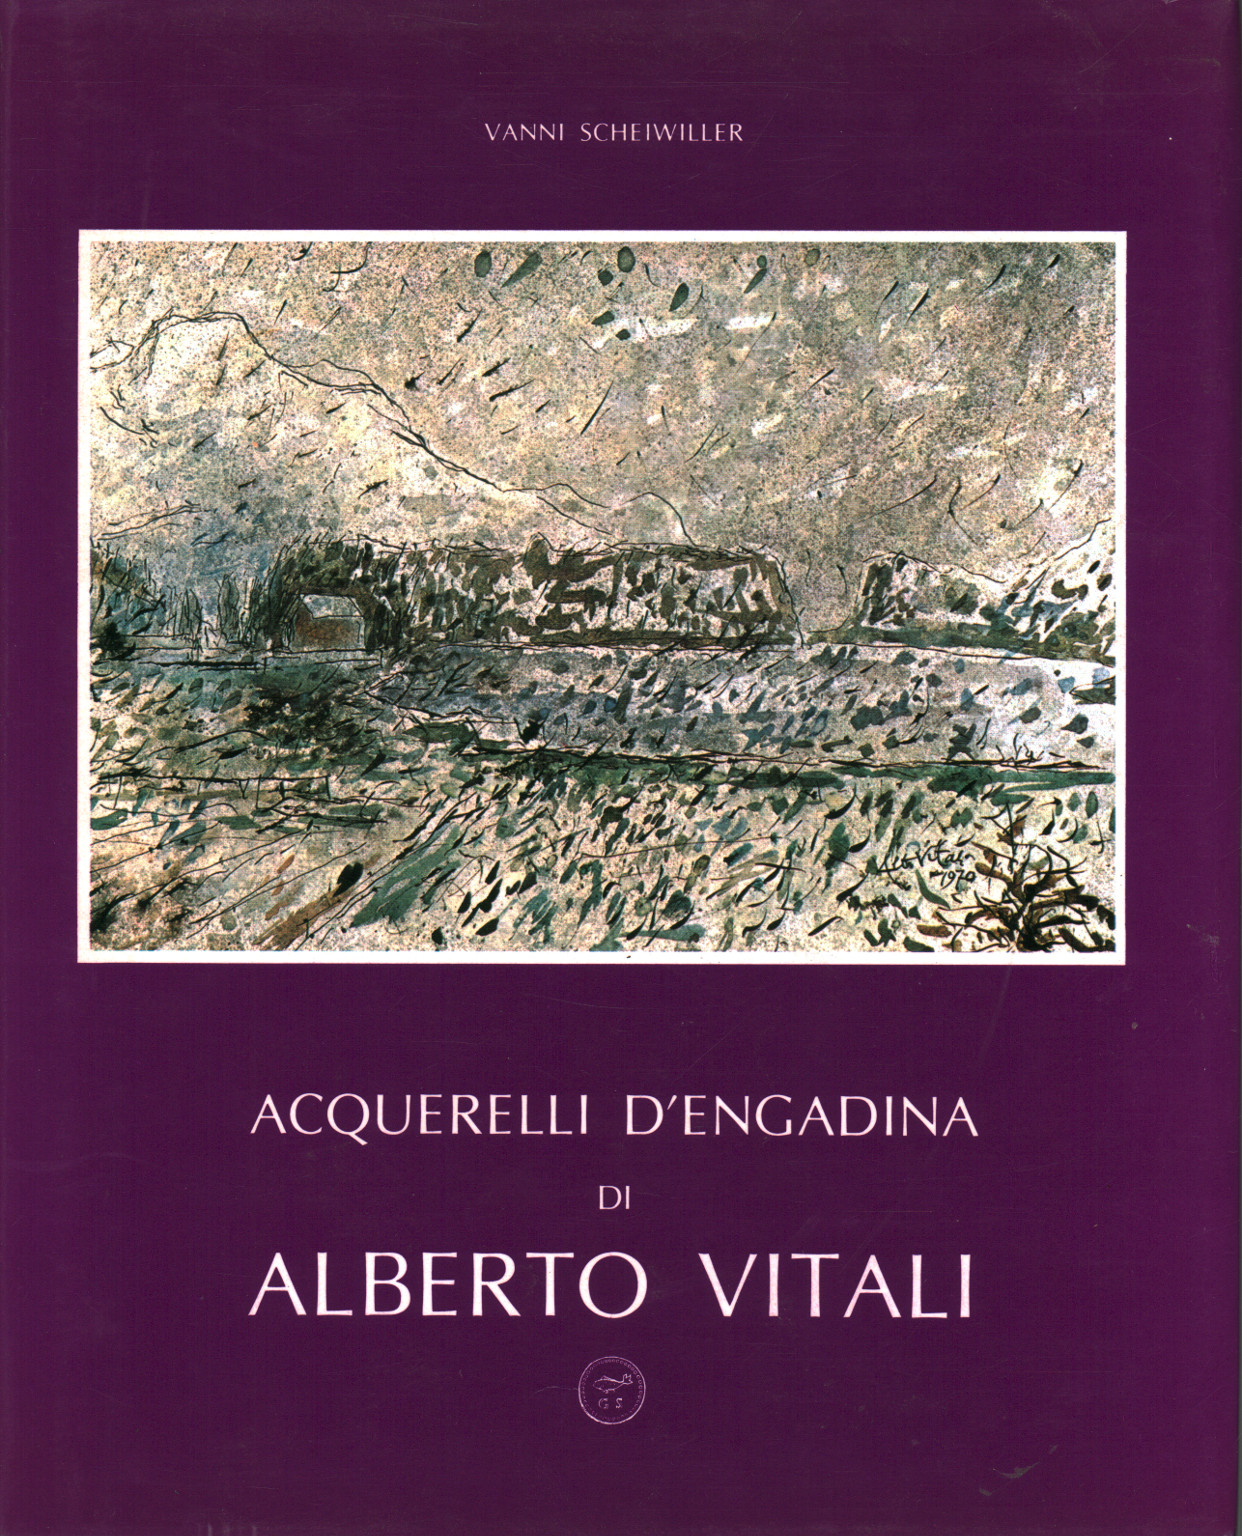 Acquerelli d Engadina di Alberto Vitali, s.a.